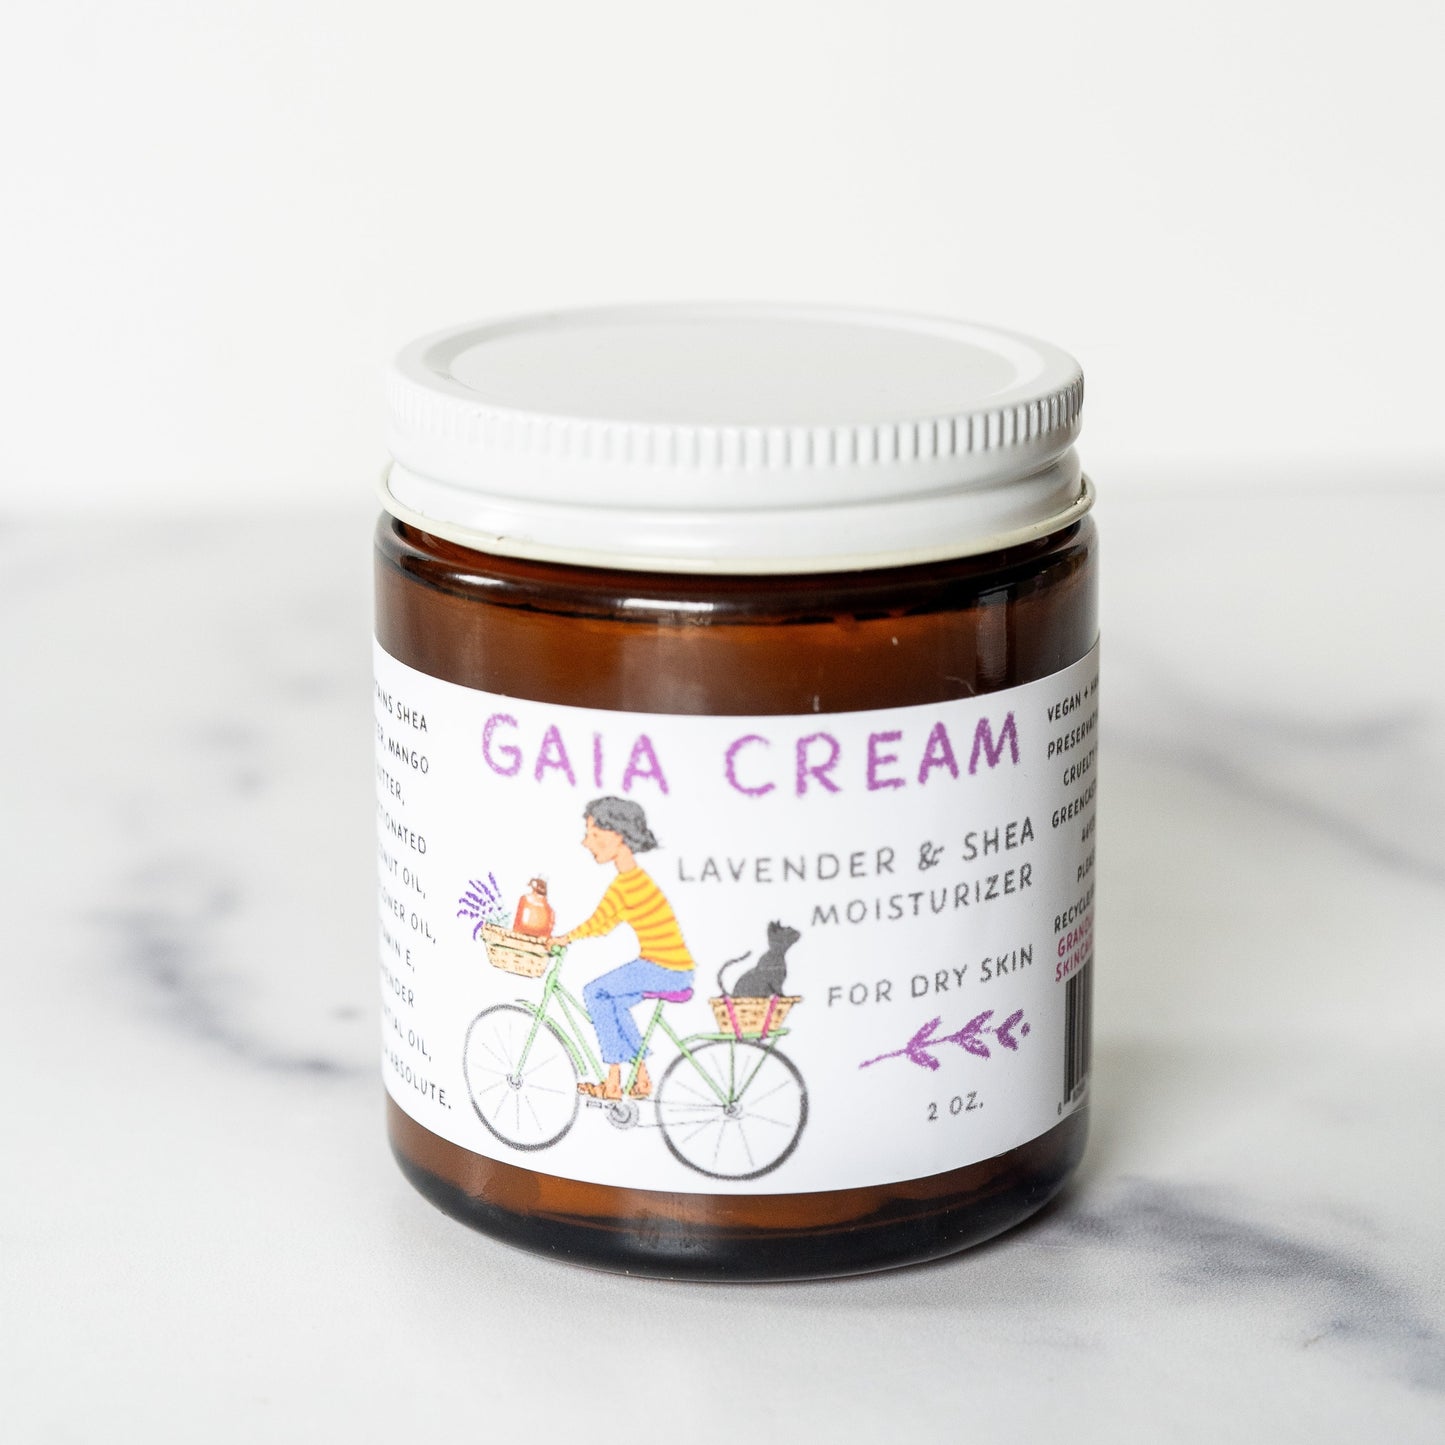 Gaia Cream